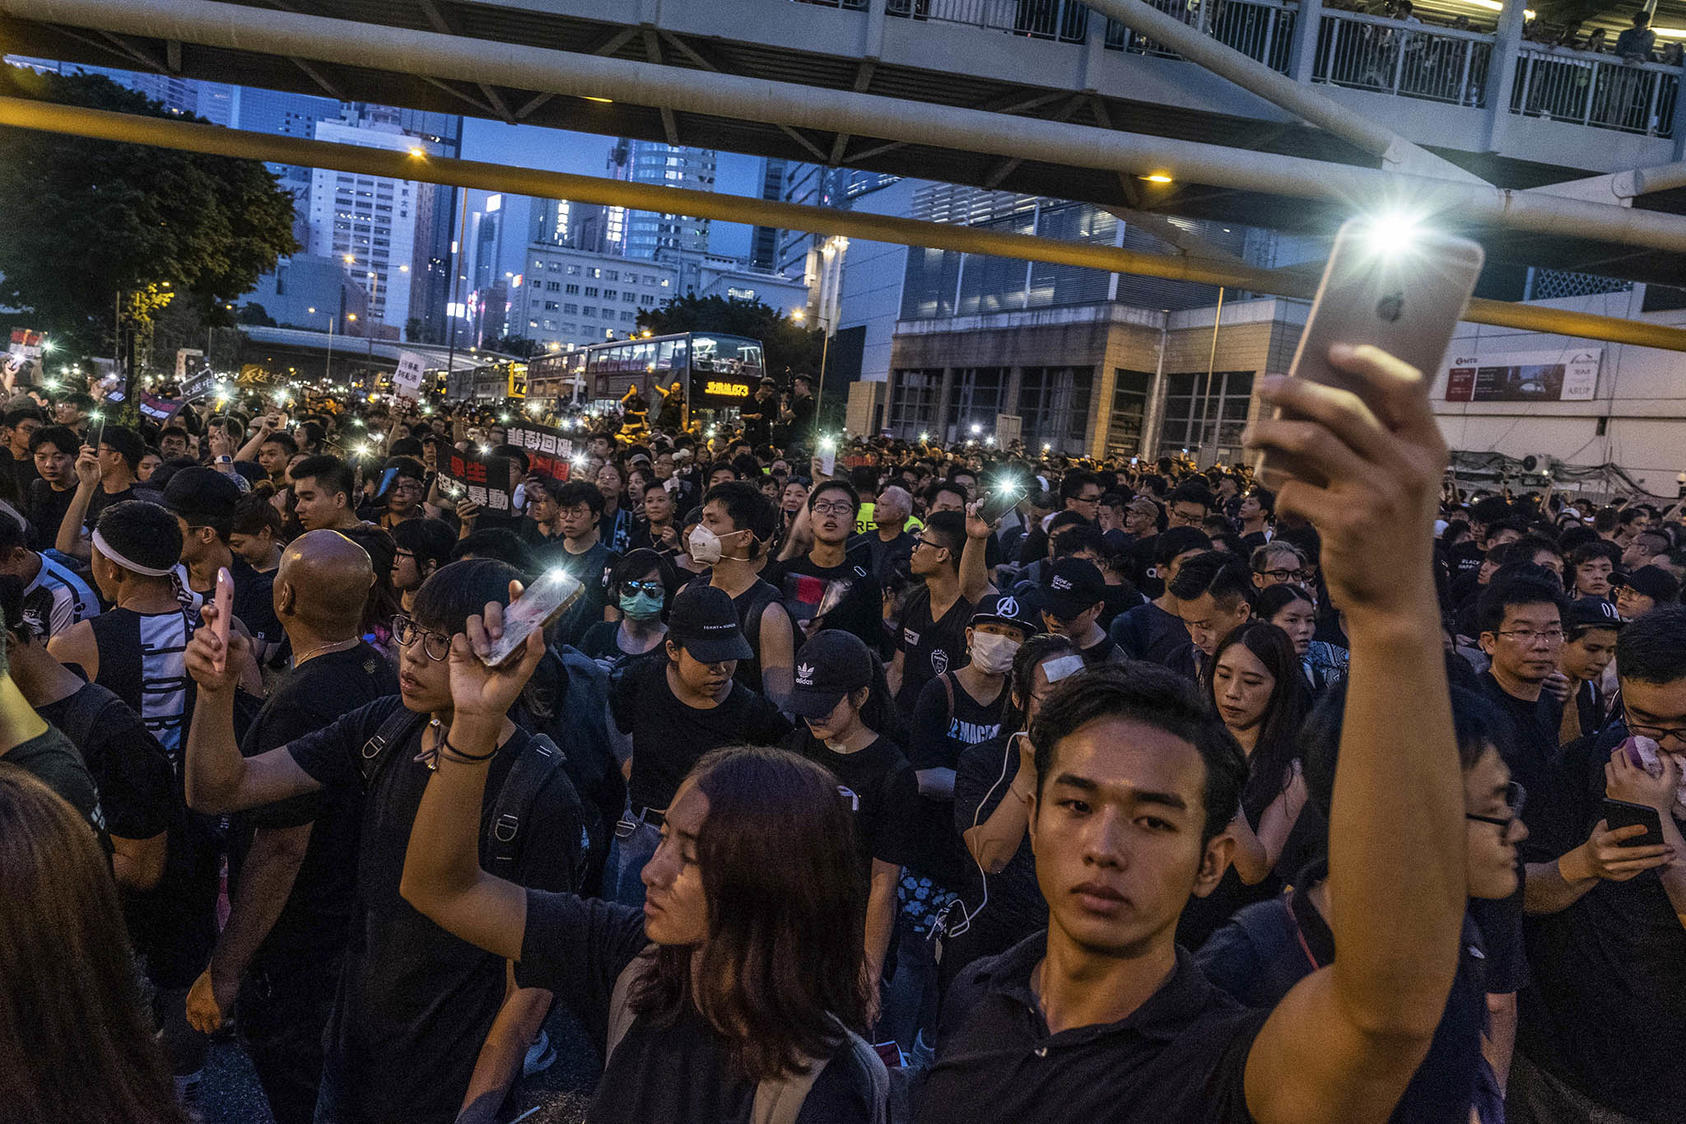 Personas encienden las linternas de sus teléfonos inteligentes en una manifestación en Hong Kong el 16 de junio de 2019 en conmemoración de la muerte de un compañero manifestante. (Fotografía de Lam Yik Fei/New York Times)